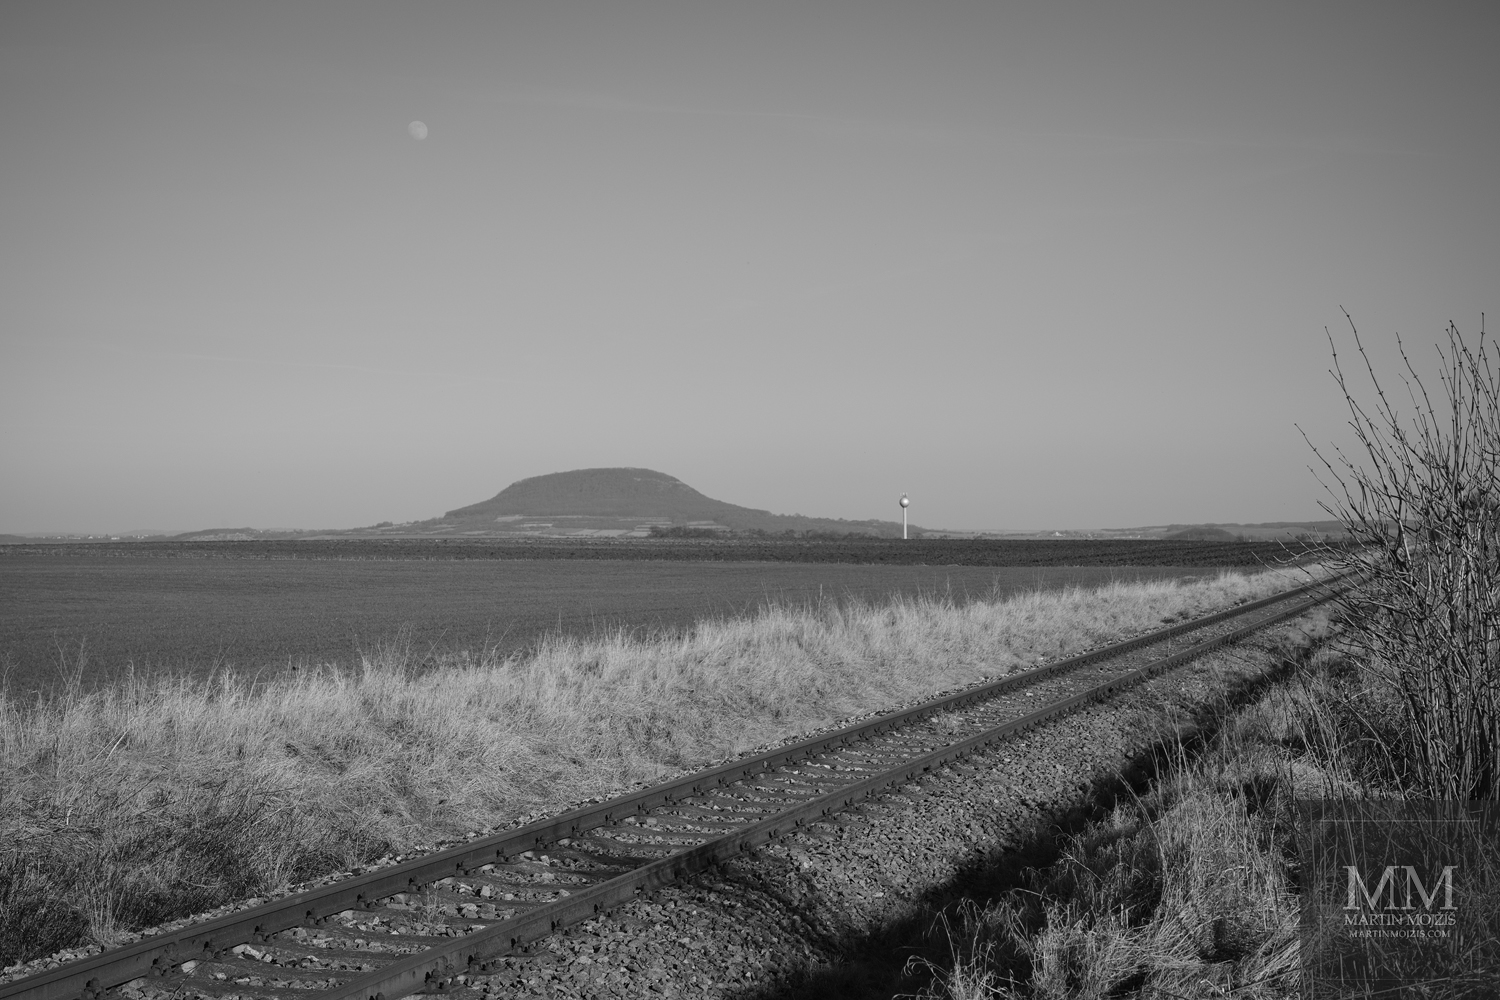 Železniční trať nedaleko hory Říp. Velkoformátová černobílá umělecká fotografie krajiny s názvem KDE JEZDÍ VLAKY. Fotograf Martin Mojžíš.